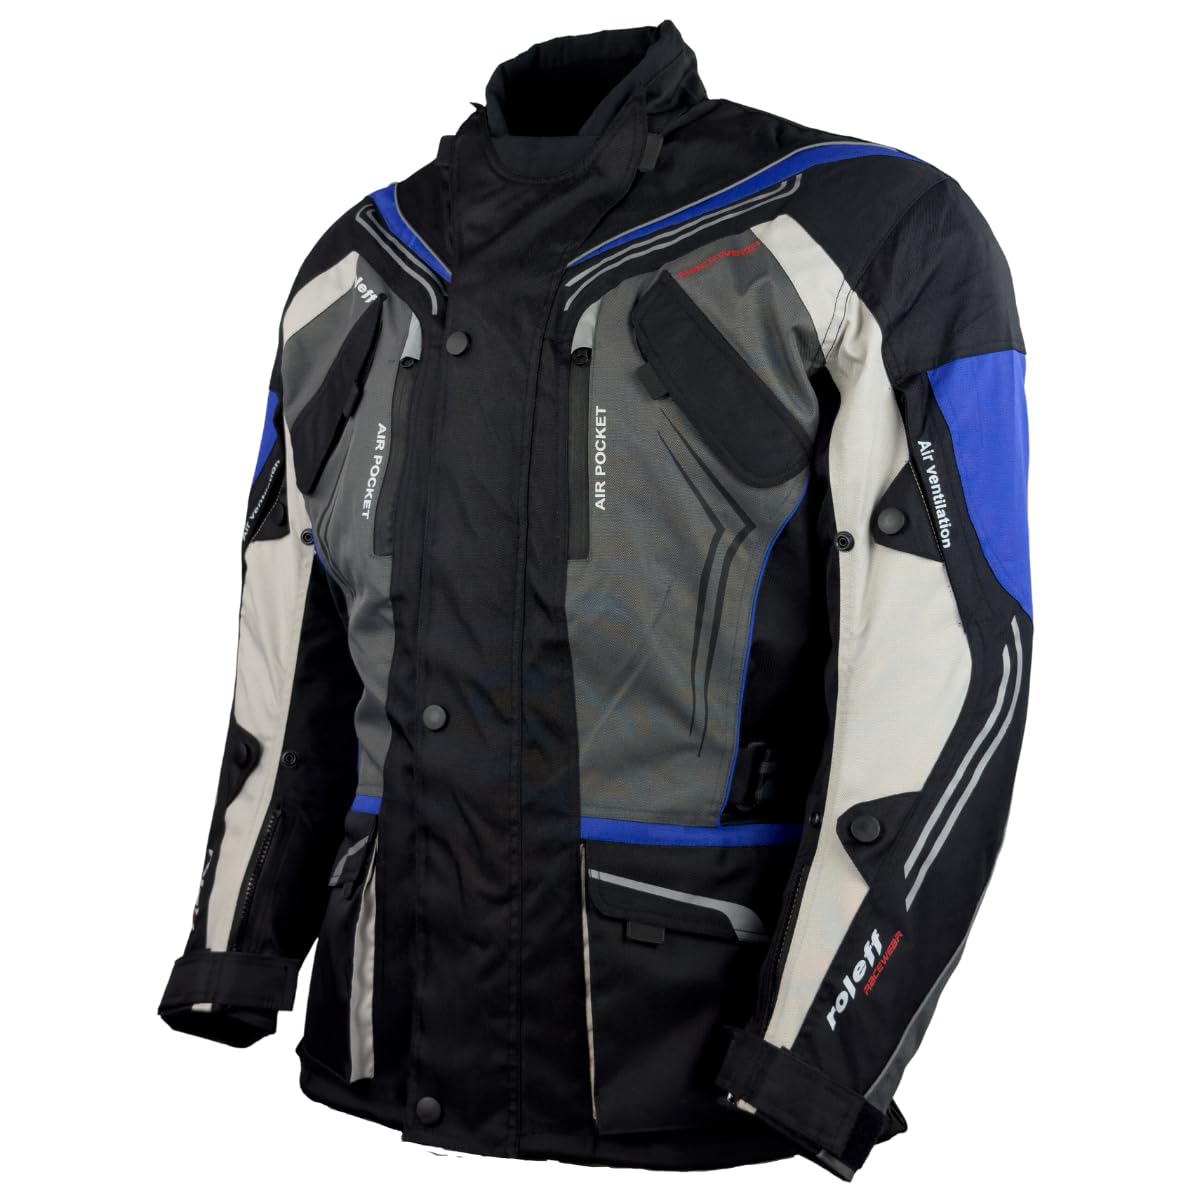 Motorradjacke schwarz-grau-blau mit Protektoren, Belüftungssystem, Klimamembrane und herausnehmbarem Thermofutter von Roleff